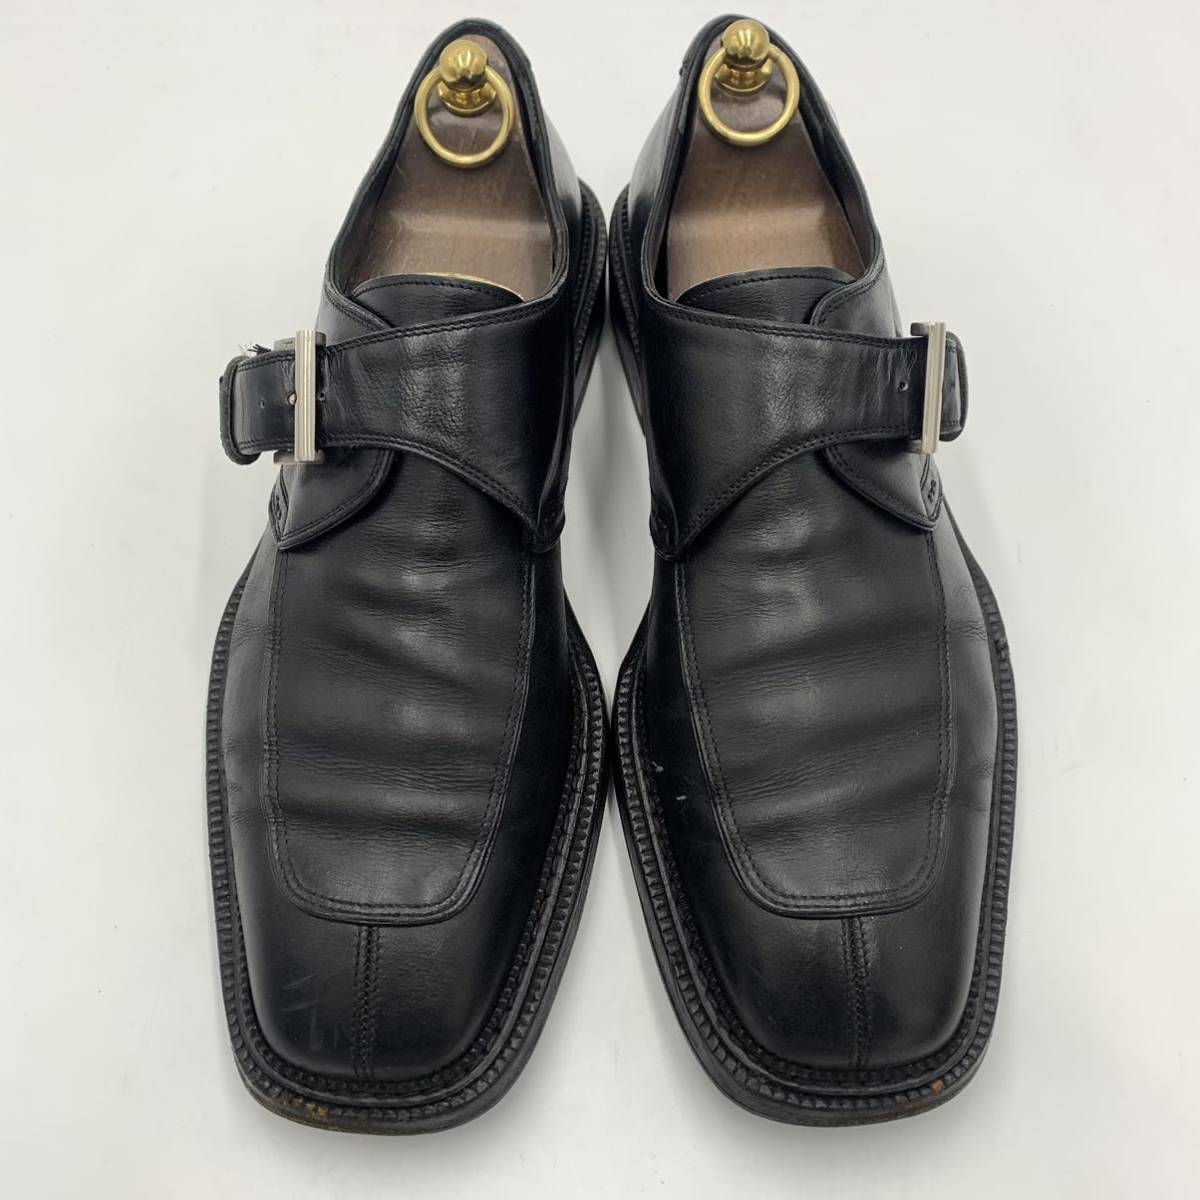 A ☆ 高級紳士靴 'イタリア製' Salvatore Ferragamo フェラガモ モンクストラップ レザー ビジネス/ドレスシューズ 革靴 size:10D 28.5cm_画像4